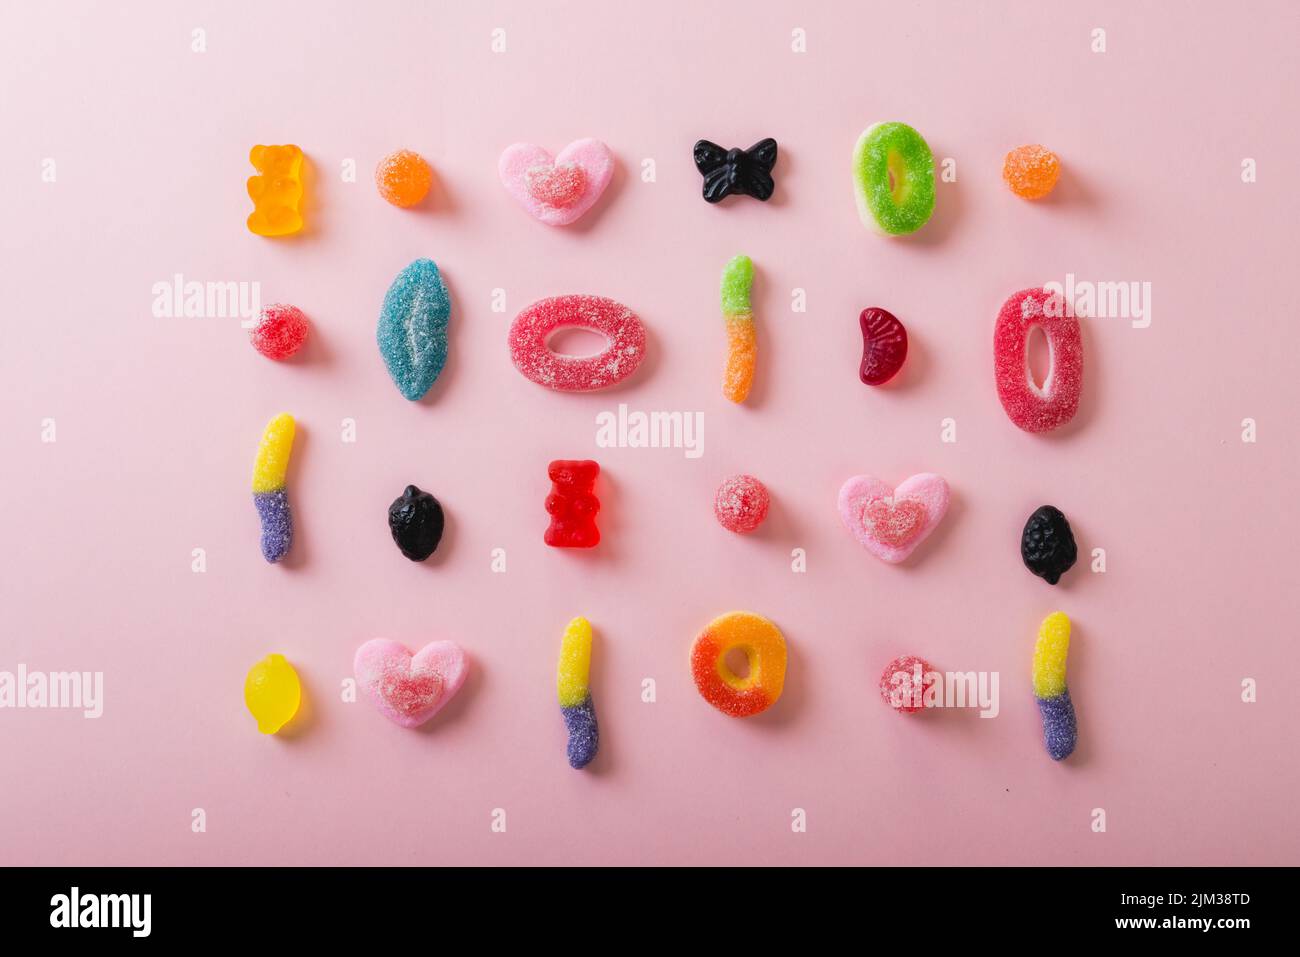 Direkt über der Ansicht unterschiedlich geformter, mehrfarbiger Zuckerrüben auf rosa Hintergrund angeordnet Stockfoto